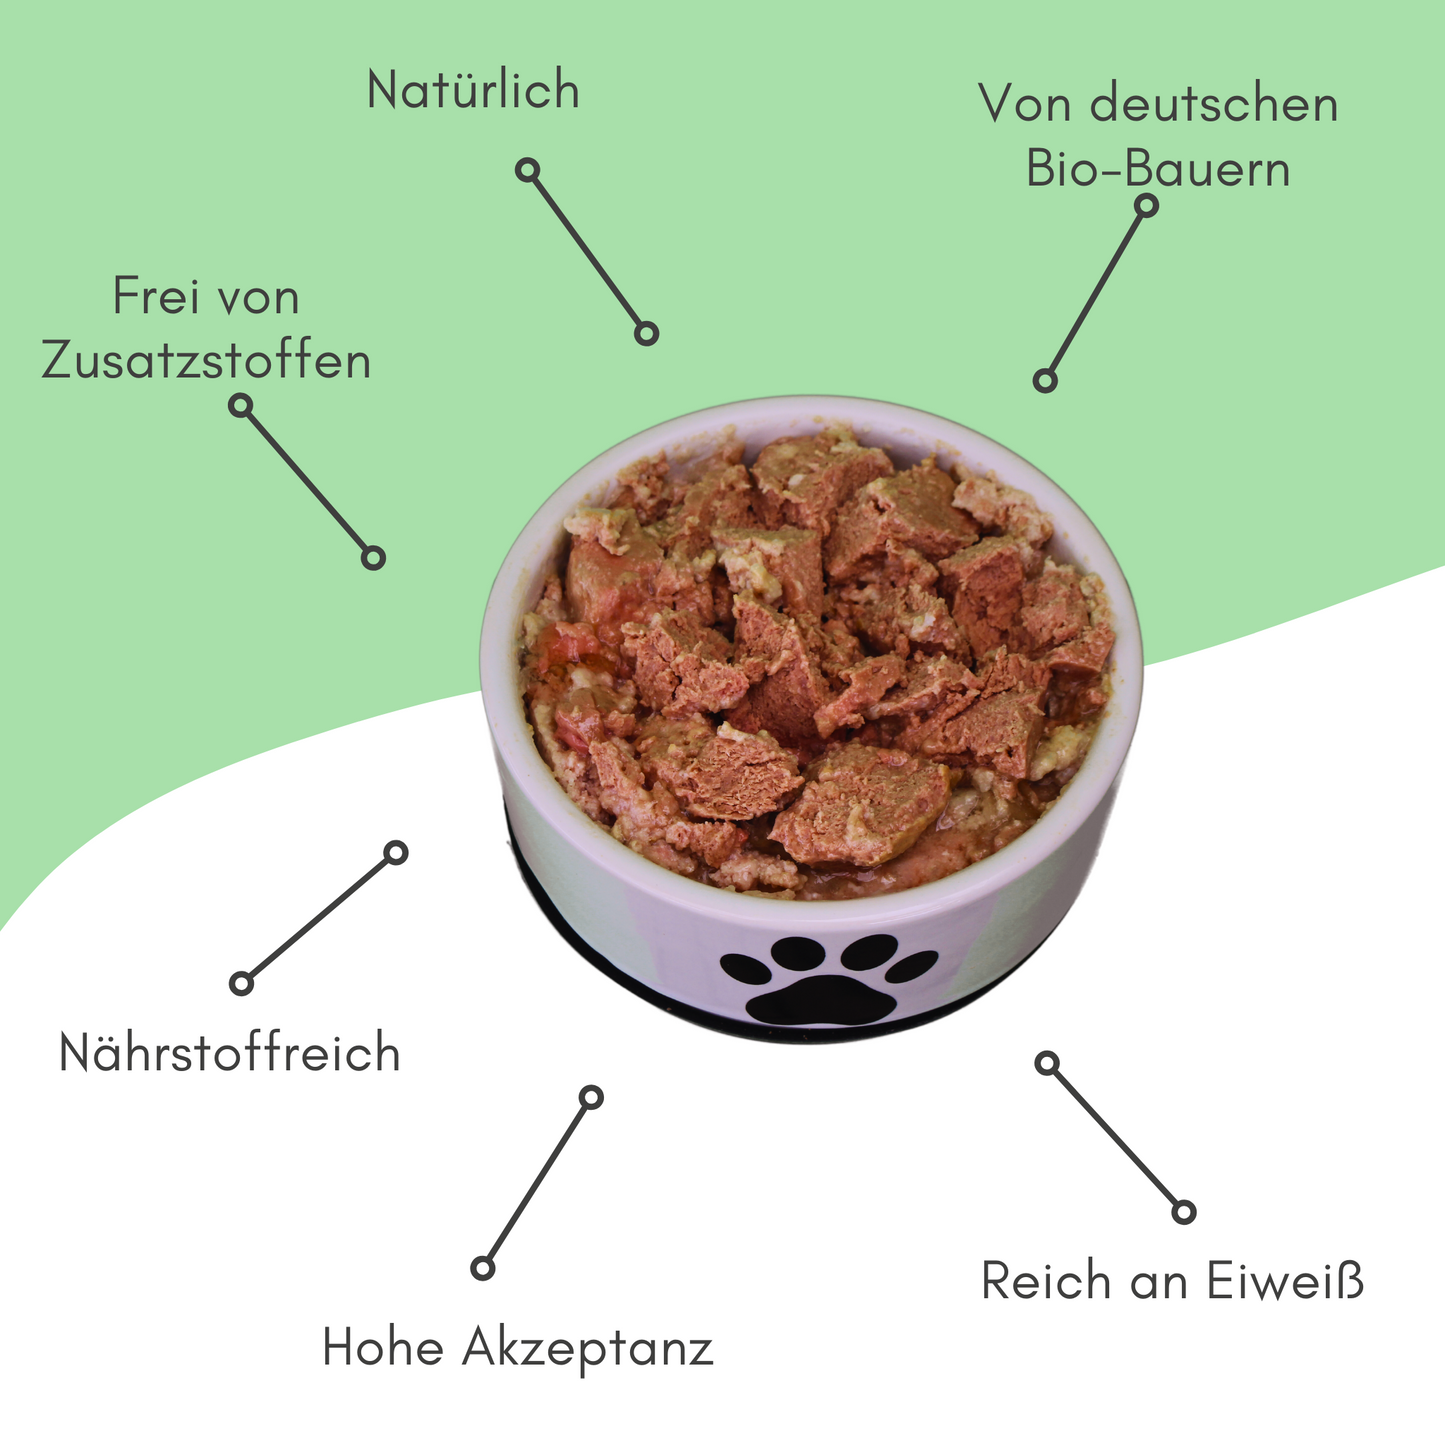 Bio-Feuchtfutter - Vegan, Dinkel & Zucchini für Hunde